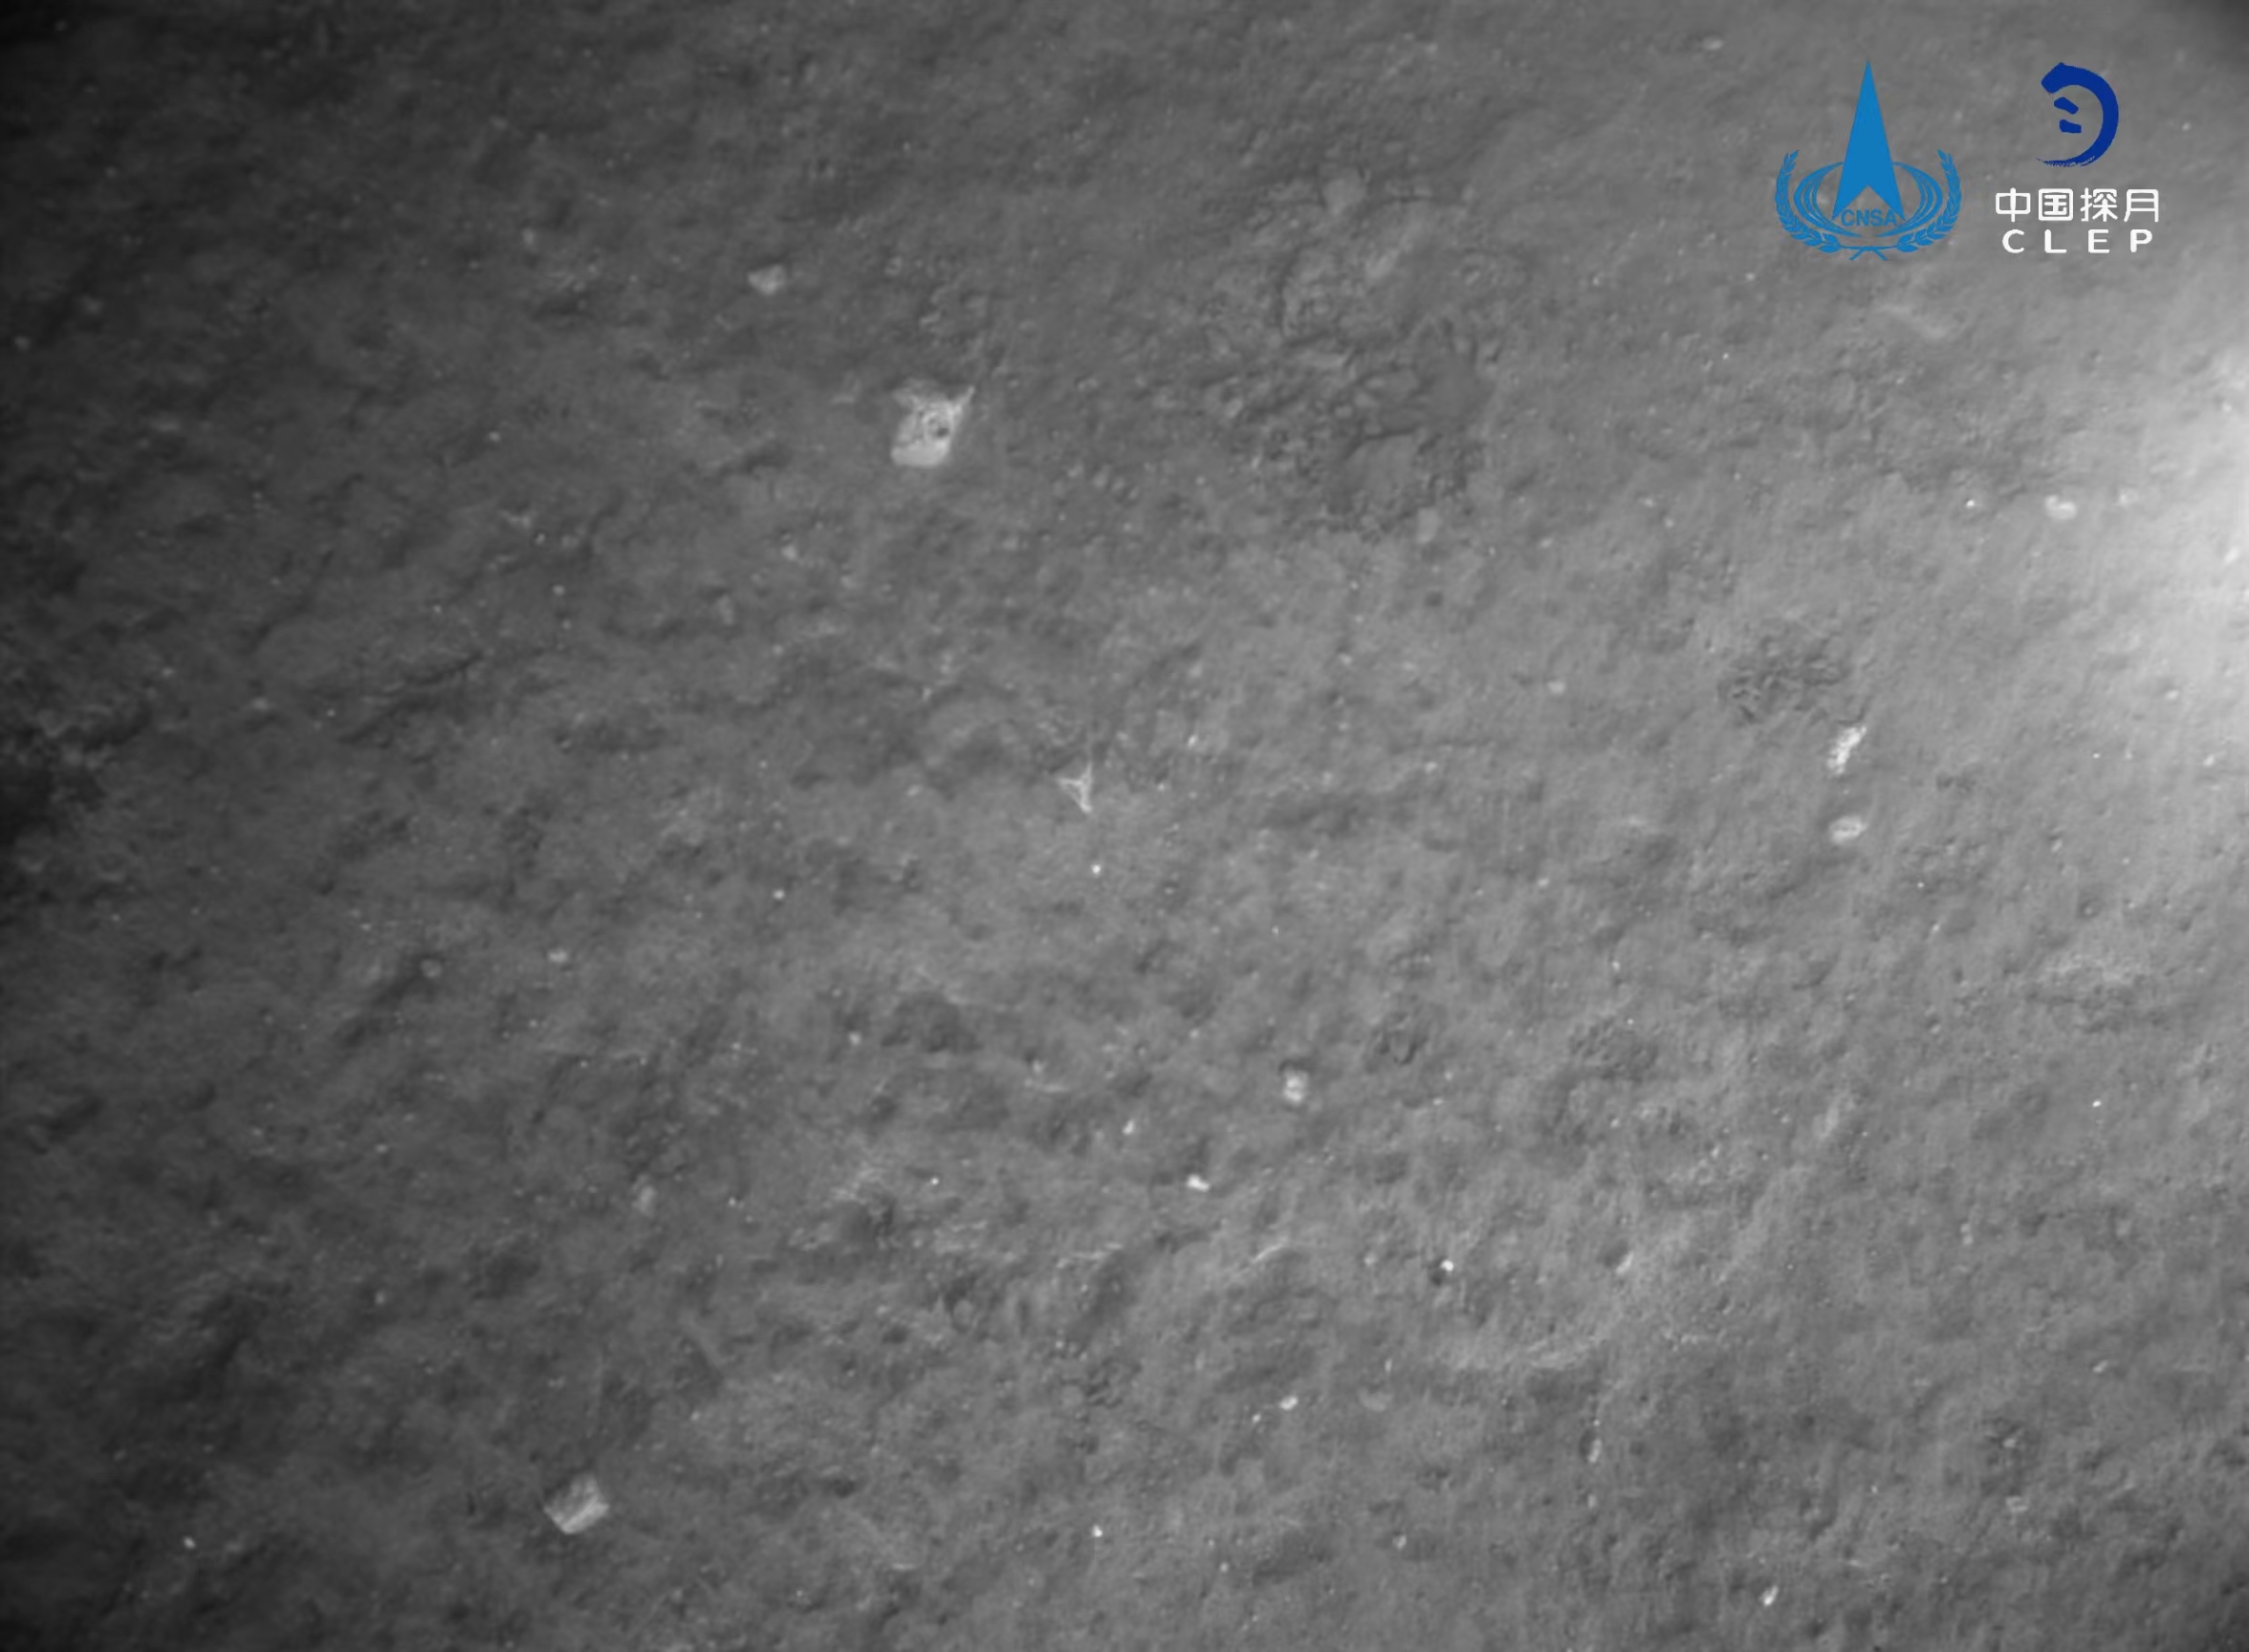 该图由降落相机在着陆器安全着陆后拍摄，图像显示着陆器底部相对平坦，图像显示拍摄月背区域中下部和右部分布有多个十多公里直径的环形坑�，图像上方是着陆点北部查菲环形山，</div><small draggable=